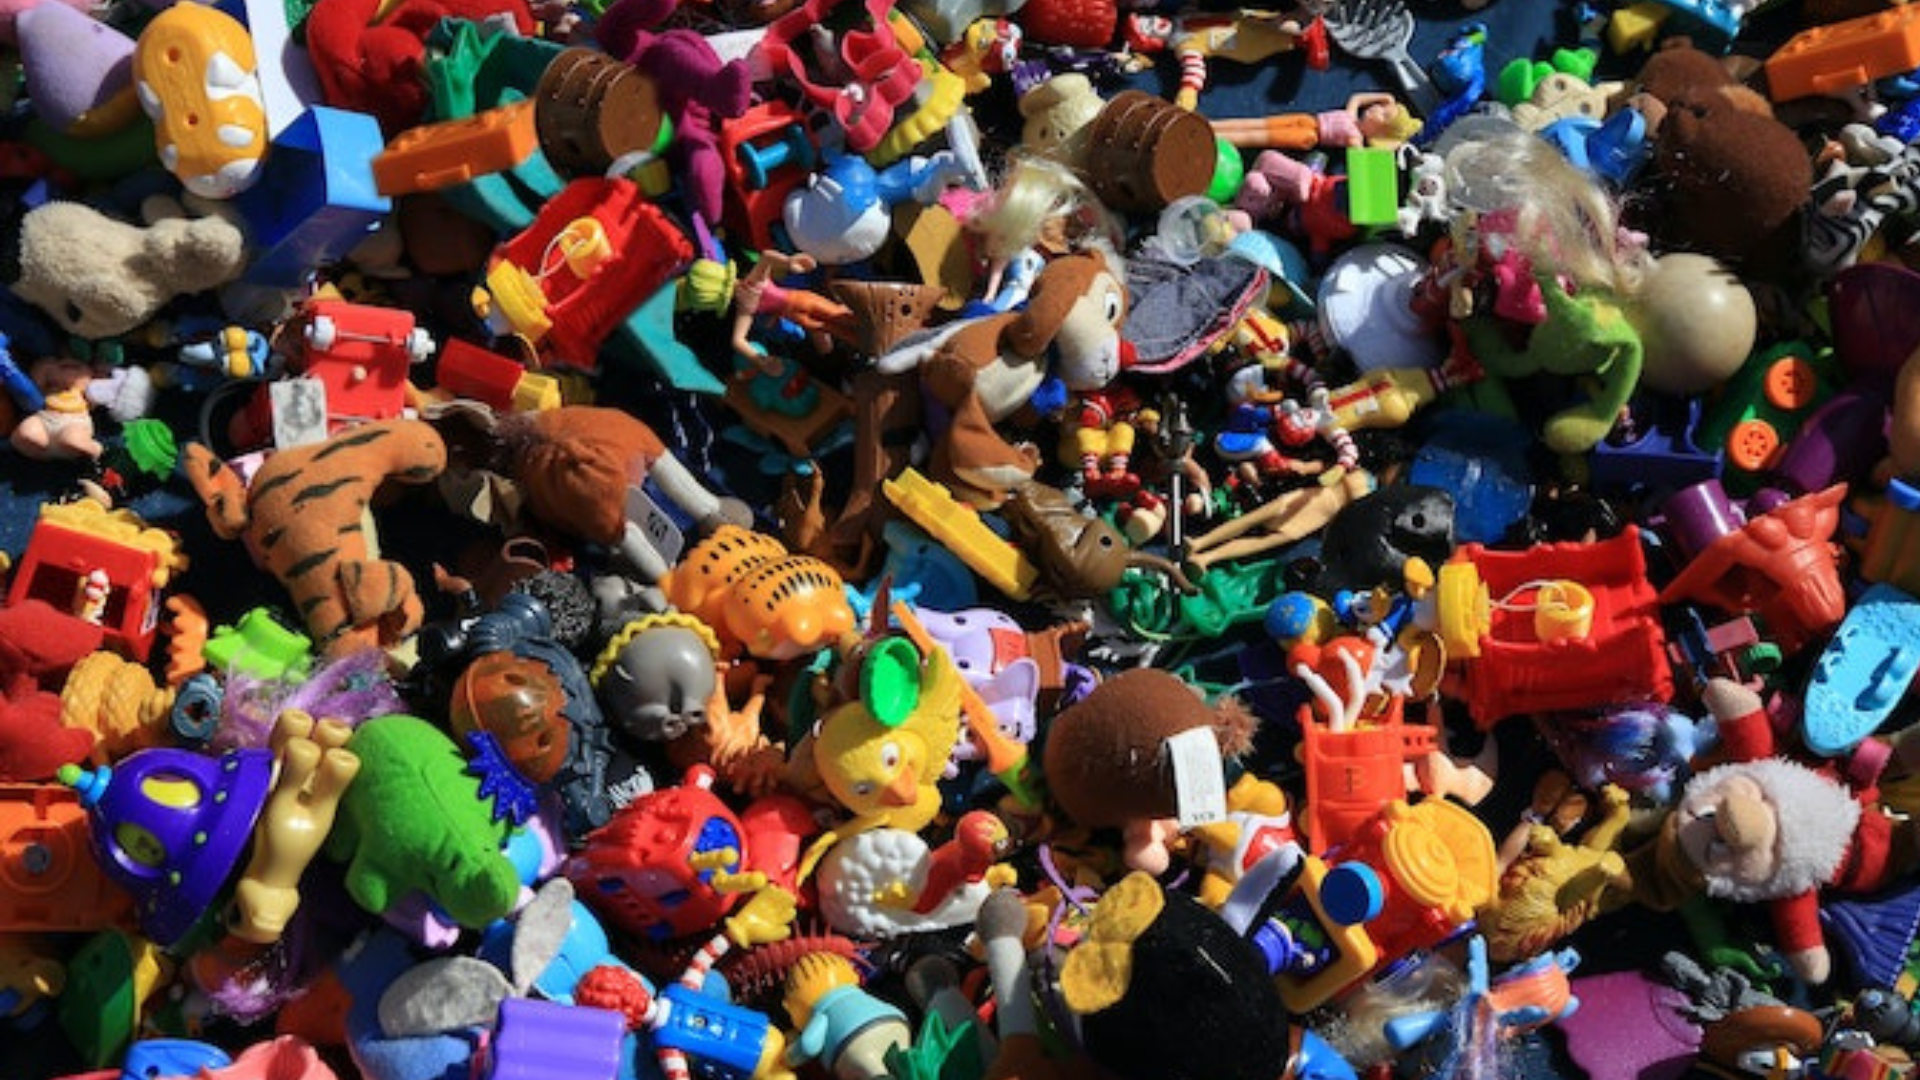 Oltre 100mila giocattoli contraffatti nascosti dietro un pannello scorrevole<br>Scatta il sequestro per la carenza dei documenti di importazione in Italia